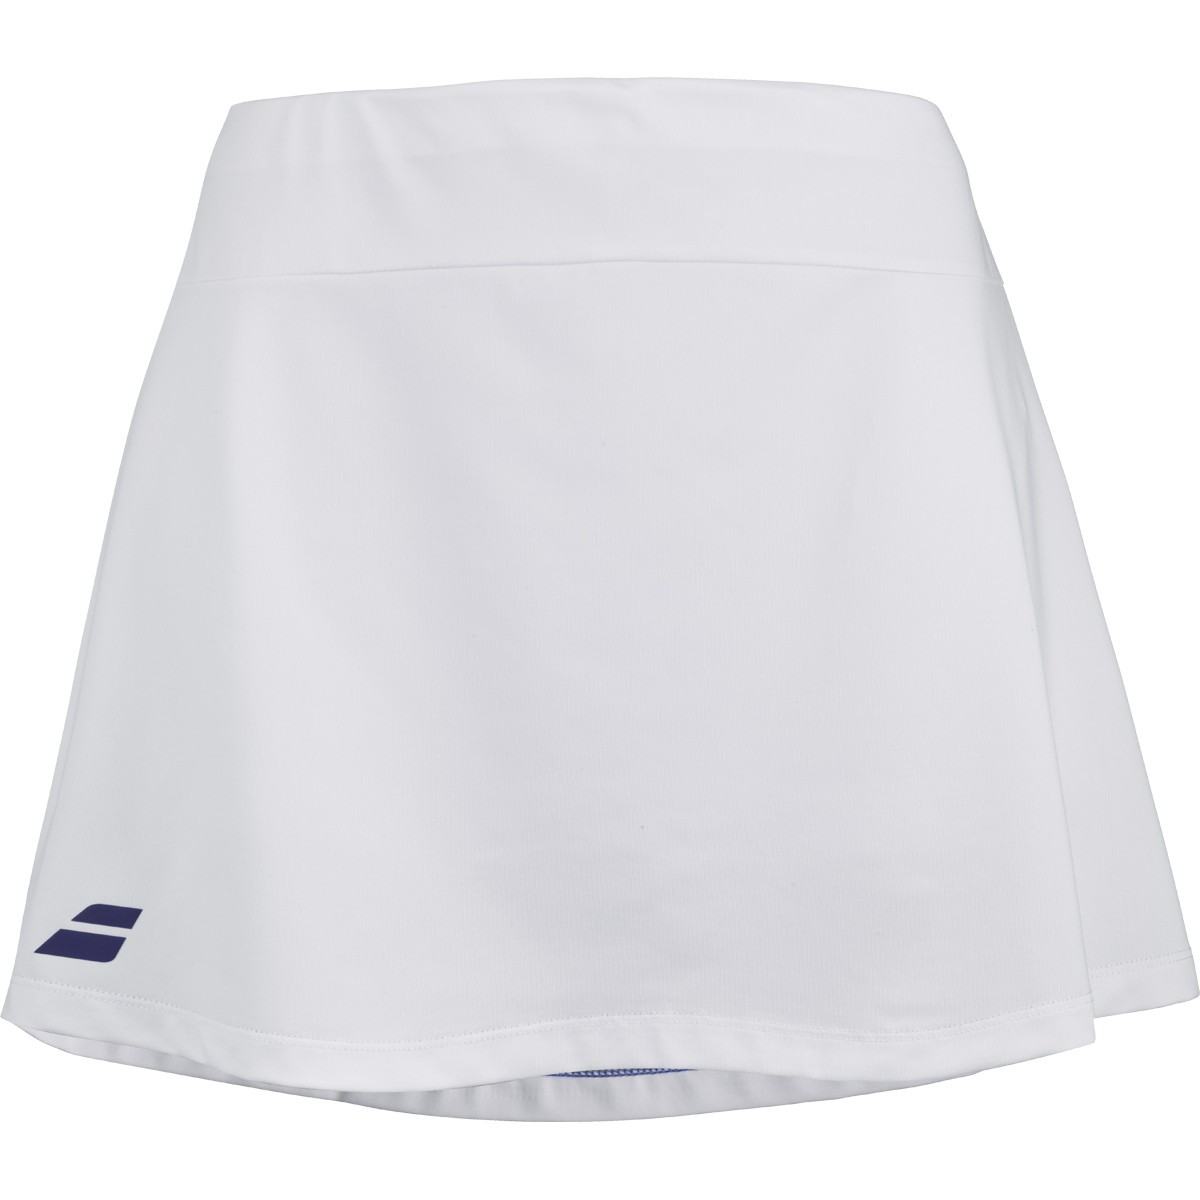 Теннисная юбка женская Babolat Play Skirt Women white/blue